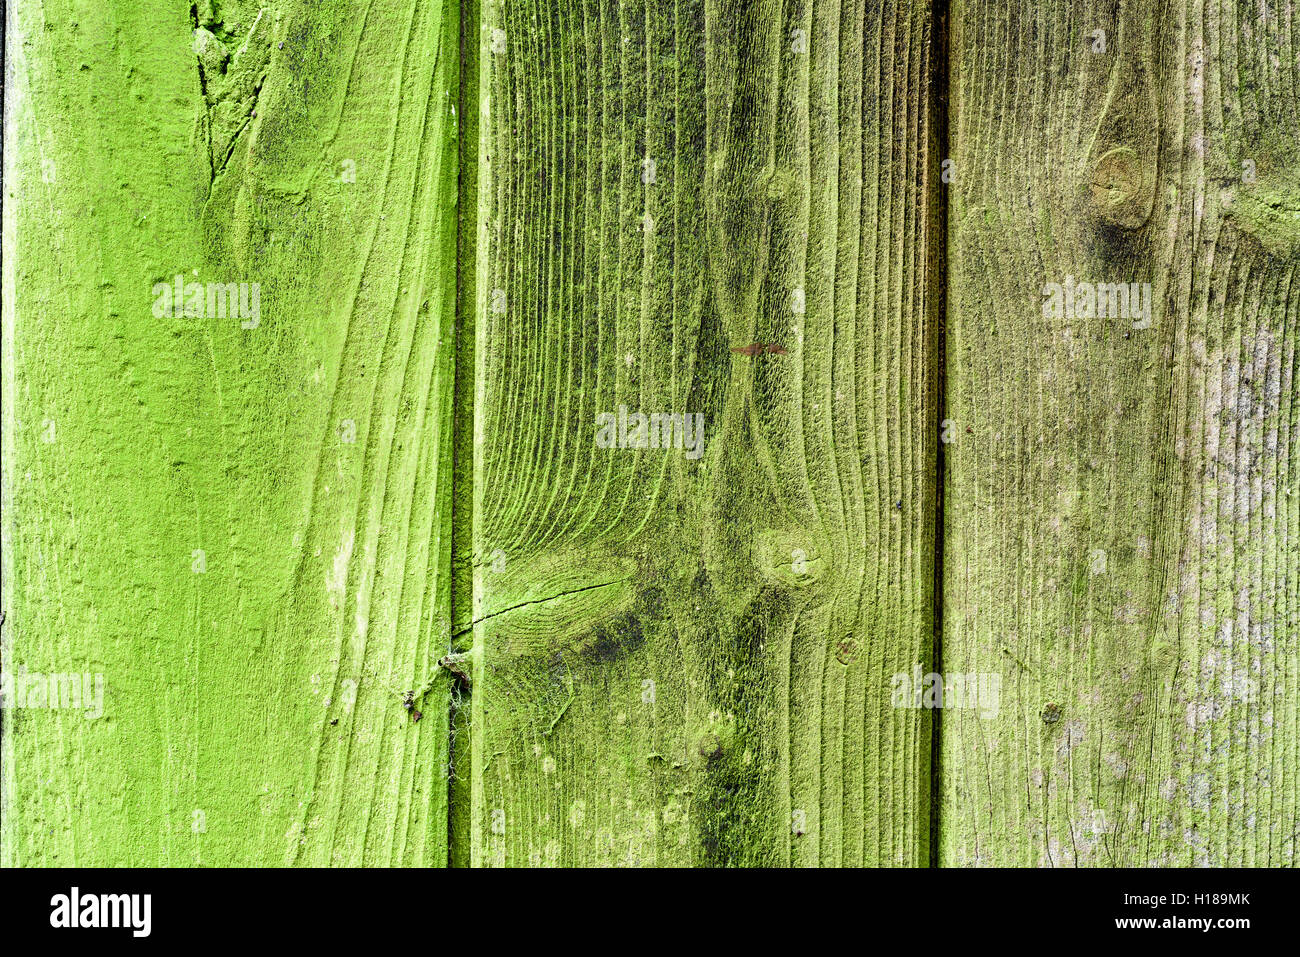 Vieux bois vieilli c'est le virage écologique en raison de la croissance de moisissures et de lichen blanc. Banque D'Images